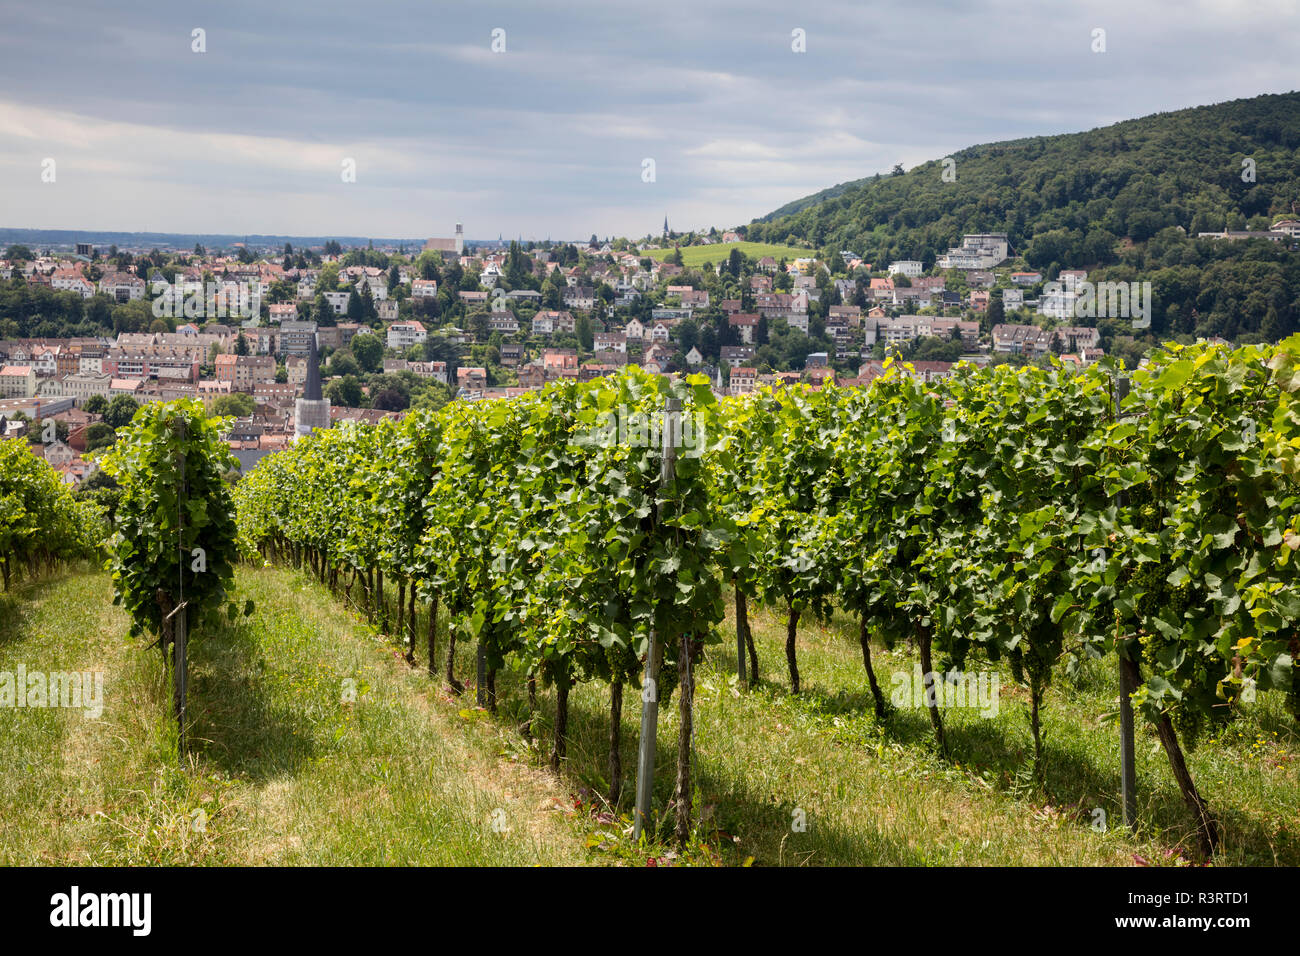 Germany, Rhineland-Palatinate, Neustadt an der Weinstrasse, townscape, vineyard Stock Photo